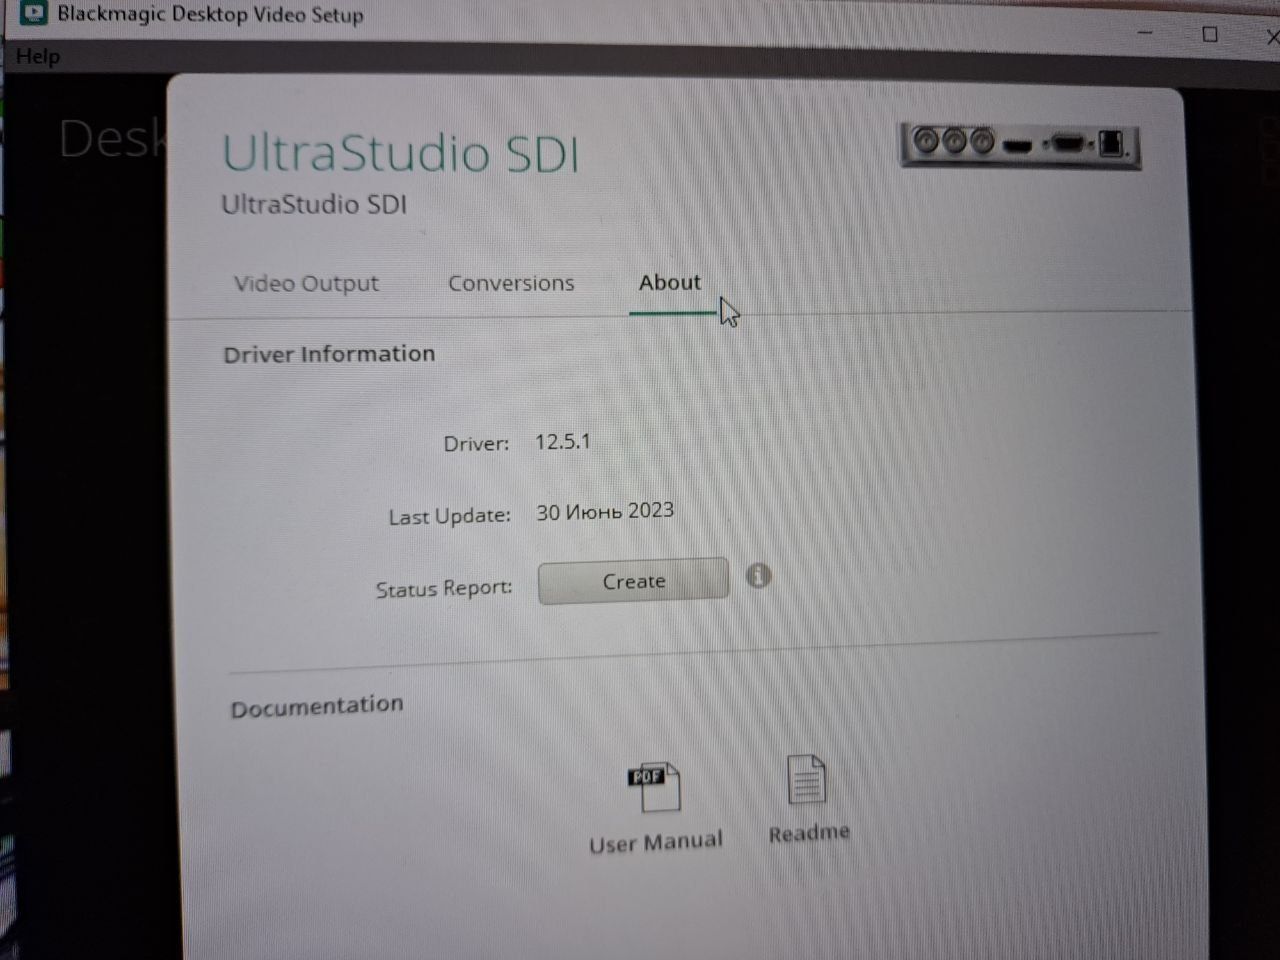 Blackmagic USB 3.0 карта видеозахвата UltraStudio SDI